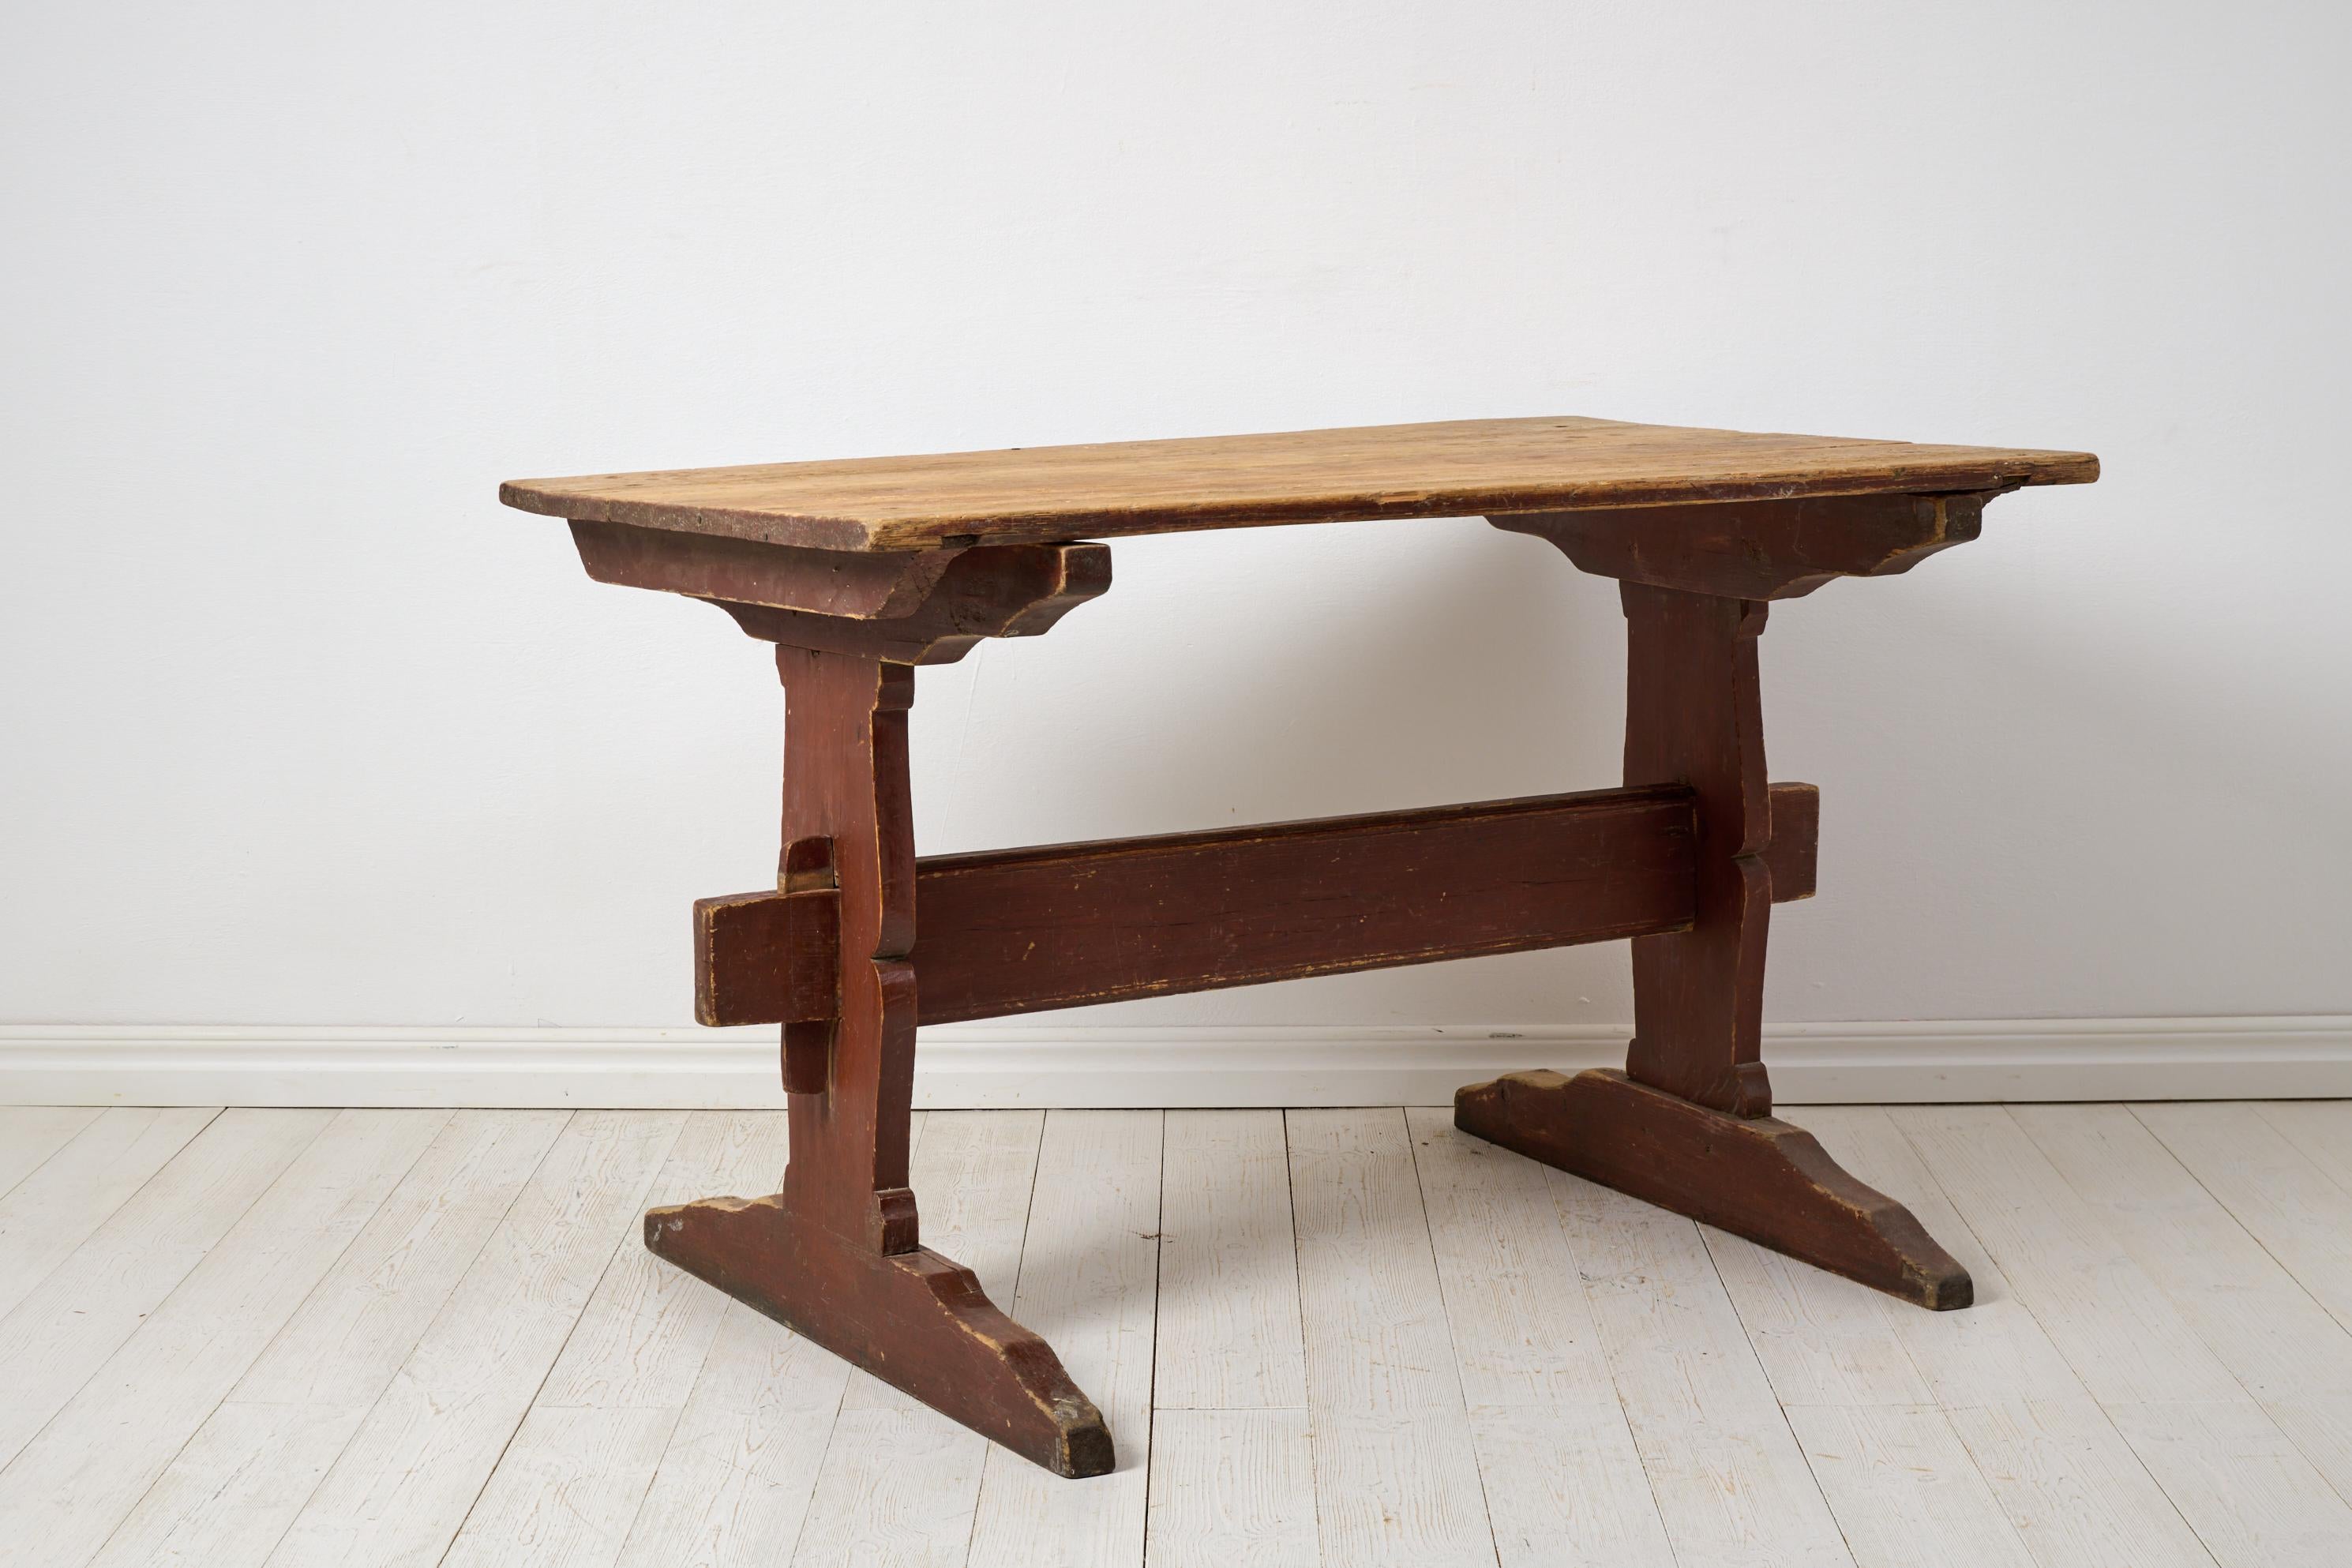 Ancienne table de salle à manger rustique ou table de travail du nord de la Suède, fabriquée vers 1820. La table est dotée d'un cadre en pin massif fabriqué à la main, sans vis ni clous. Il est dans son état d'origine, intact, avec son cadre